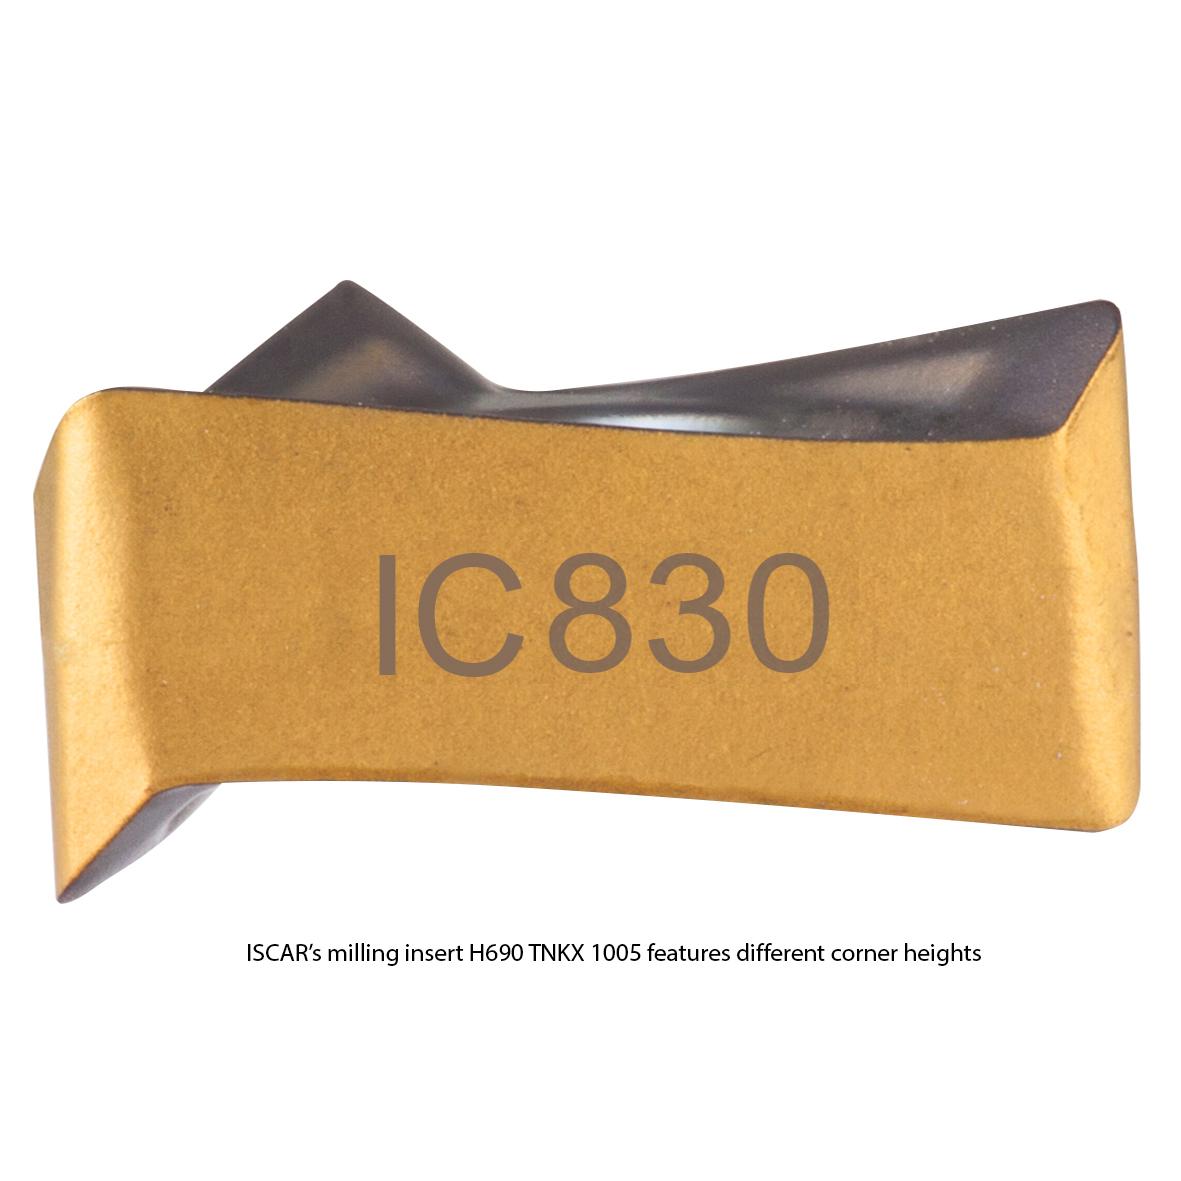 H690 TNKX 1005铣削插入具有标记的角落的高度差异。